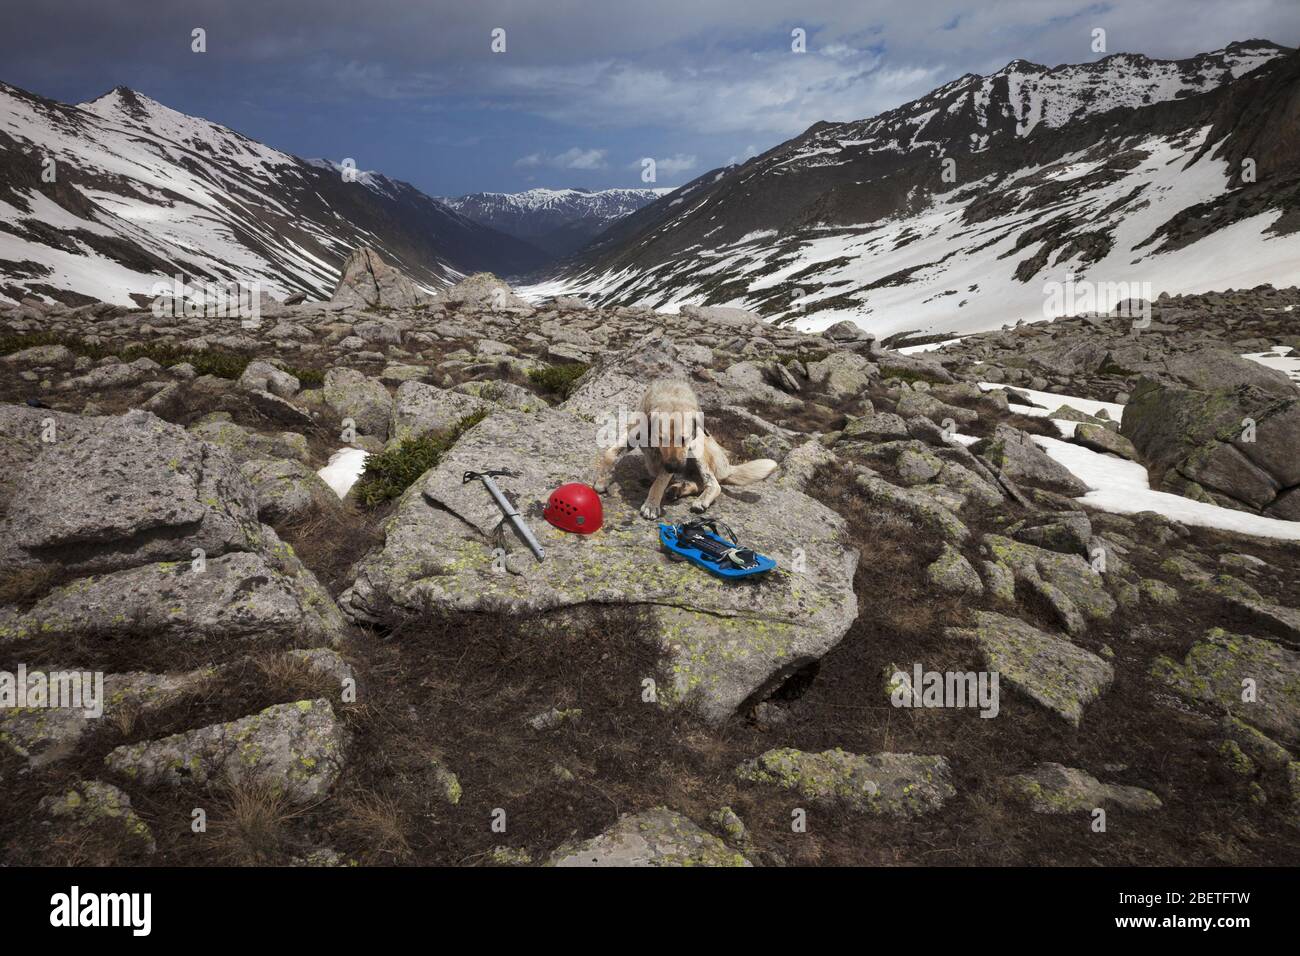 Chien sur une grosse pierre avec équipement de randonnée: Raquettes bleues, casque d'escalade rouge et hache à glace. Montagnes enneigées et ciel bleu avec nuages. Turquie, Kachkar Banque D'Images